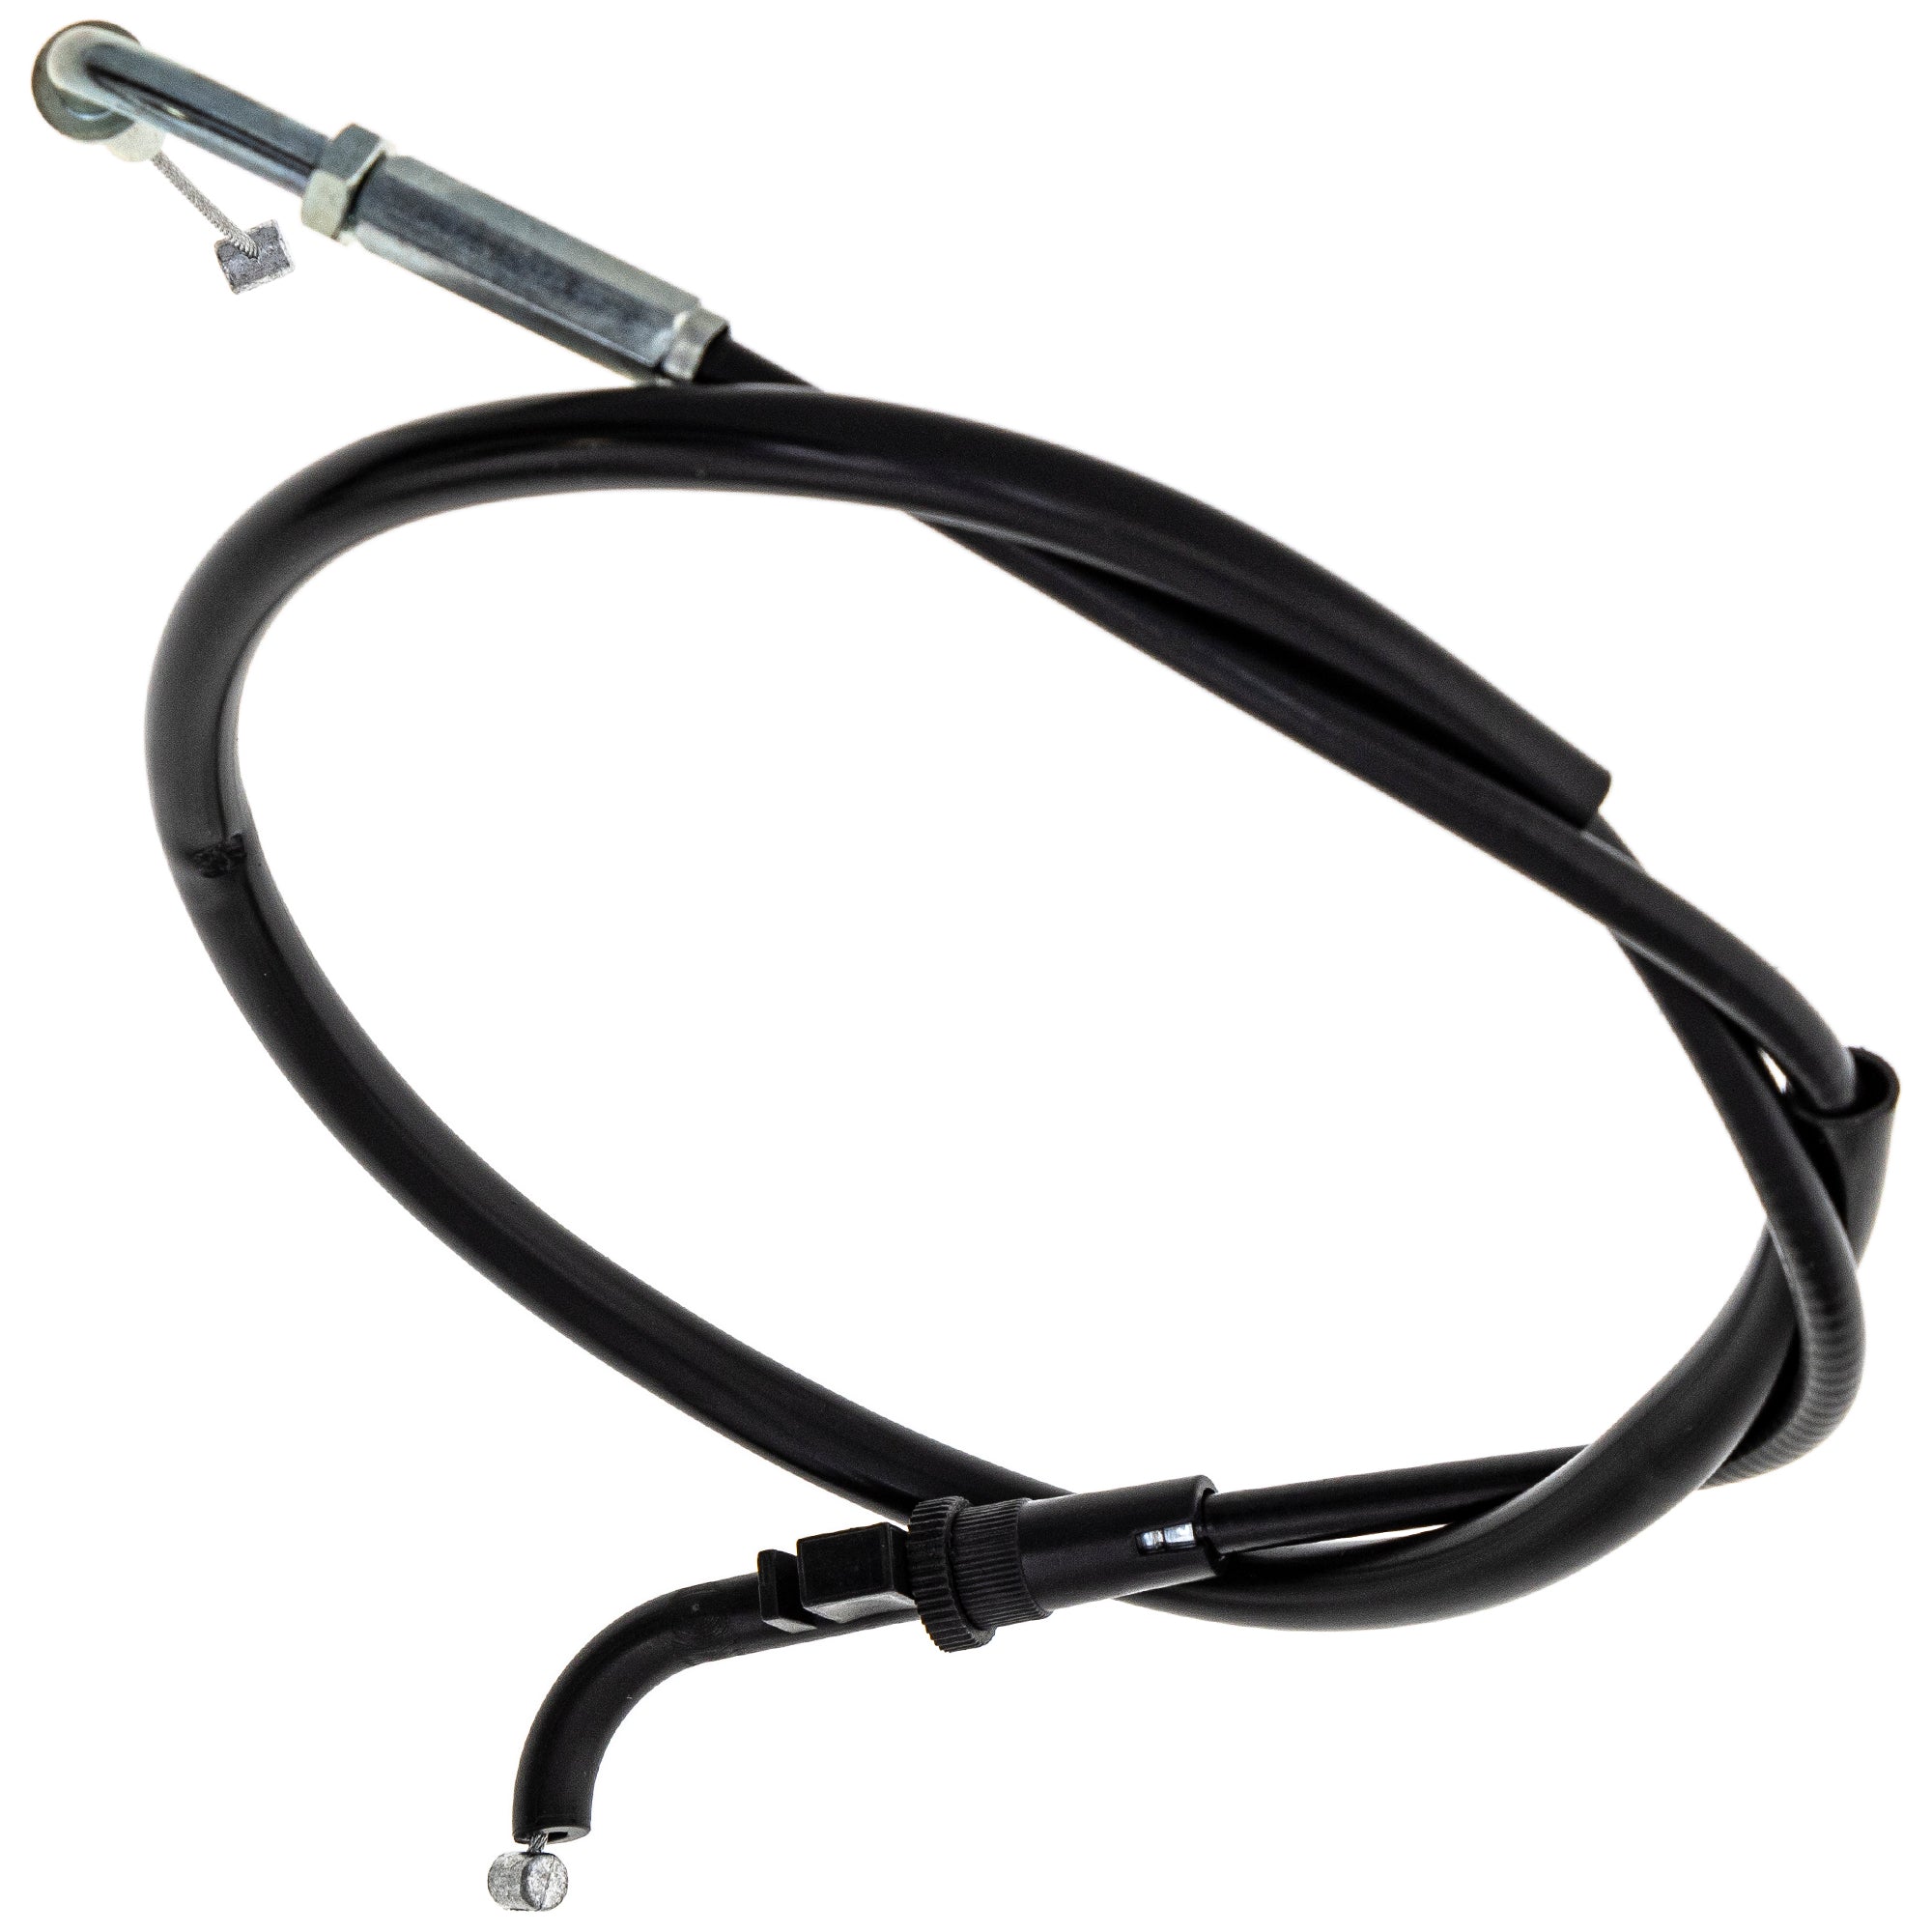 Throttle Cable for Kawasaki Ninja ZX7 ZX750 54012-0035